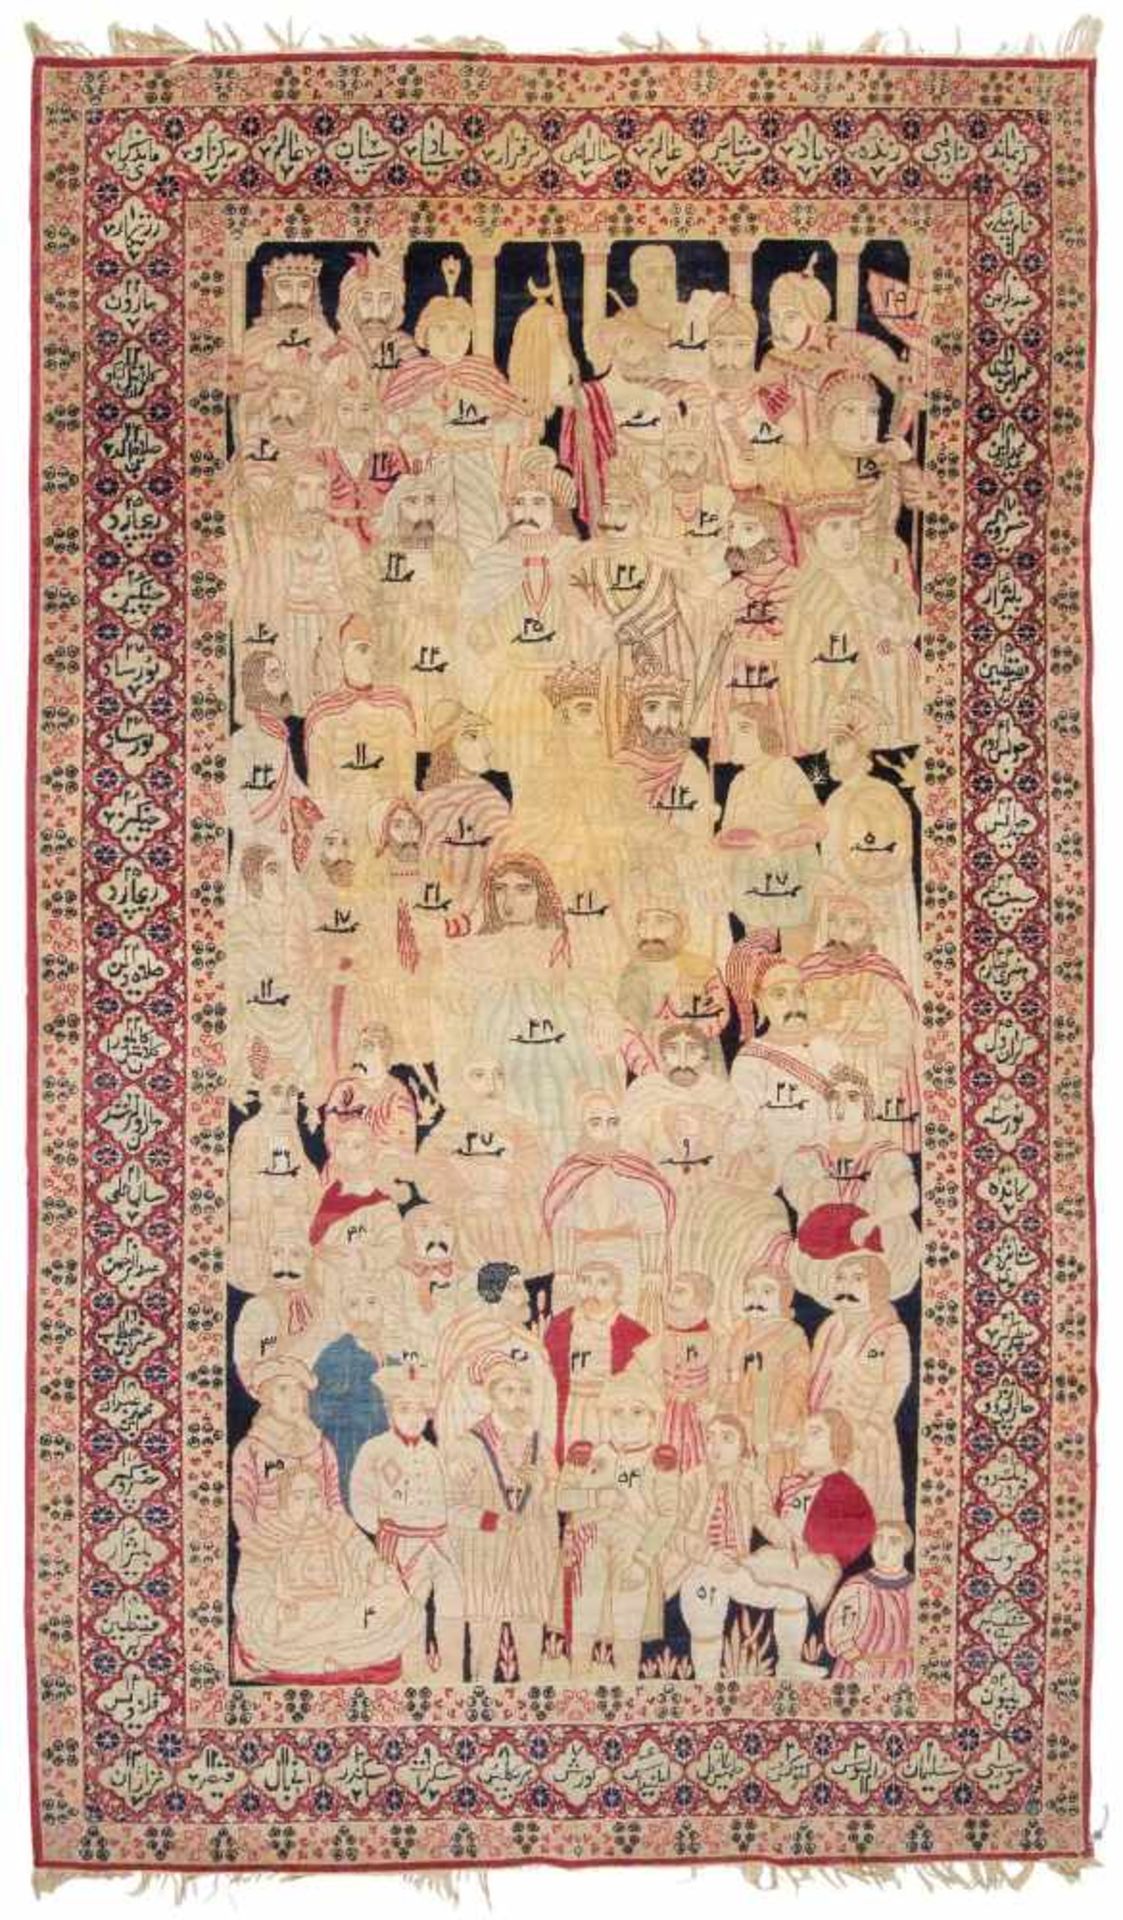 Kirman-FiguralSO-Persien, um 1900. Sog. „Mashahir-Teppich“. Das Innenfeld besteht aus einer